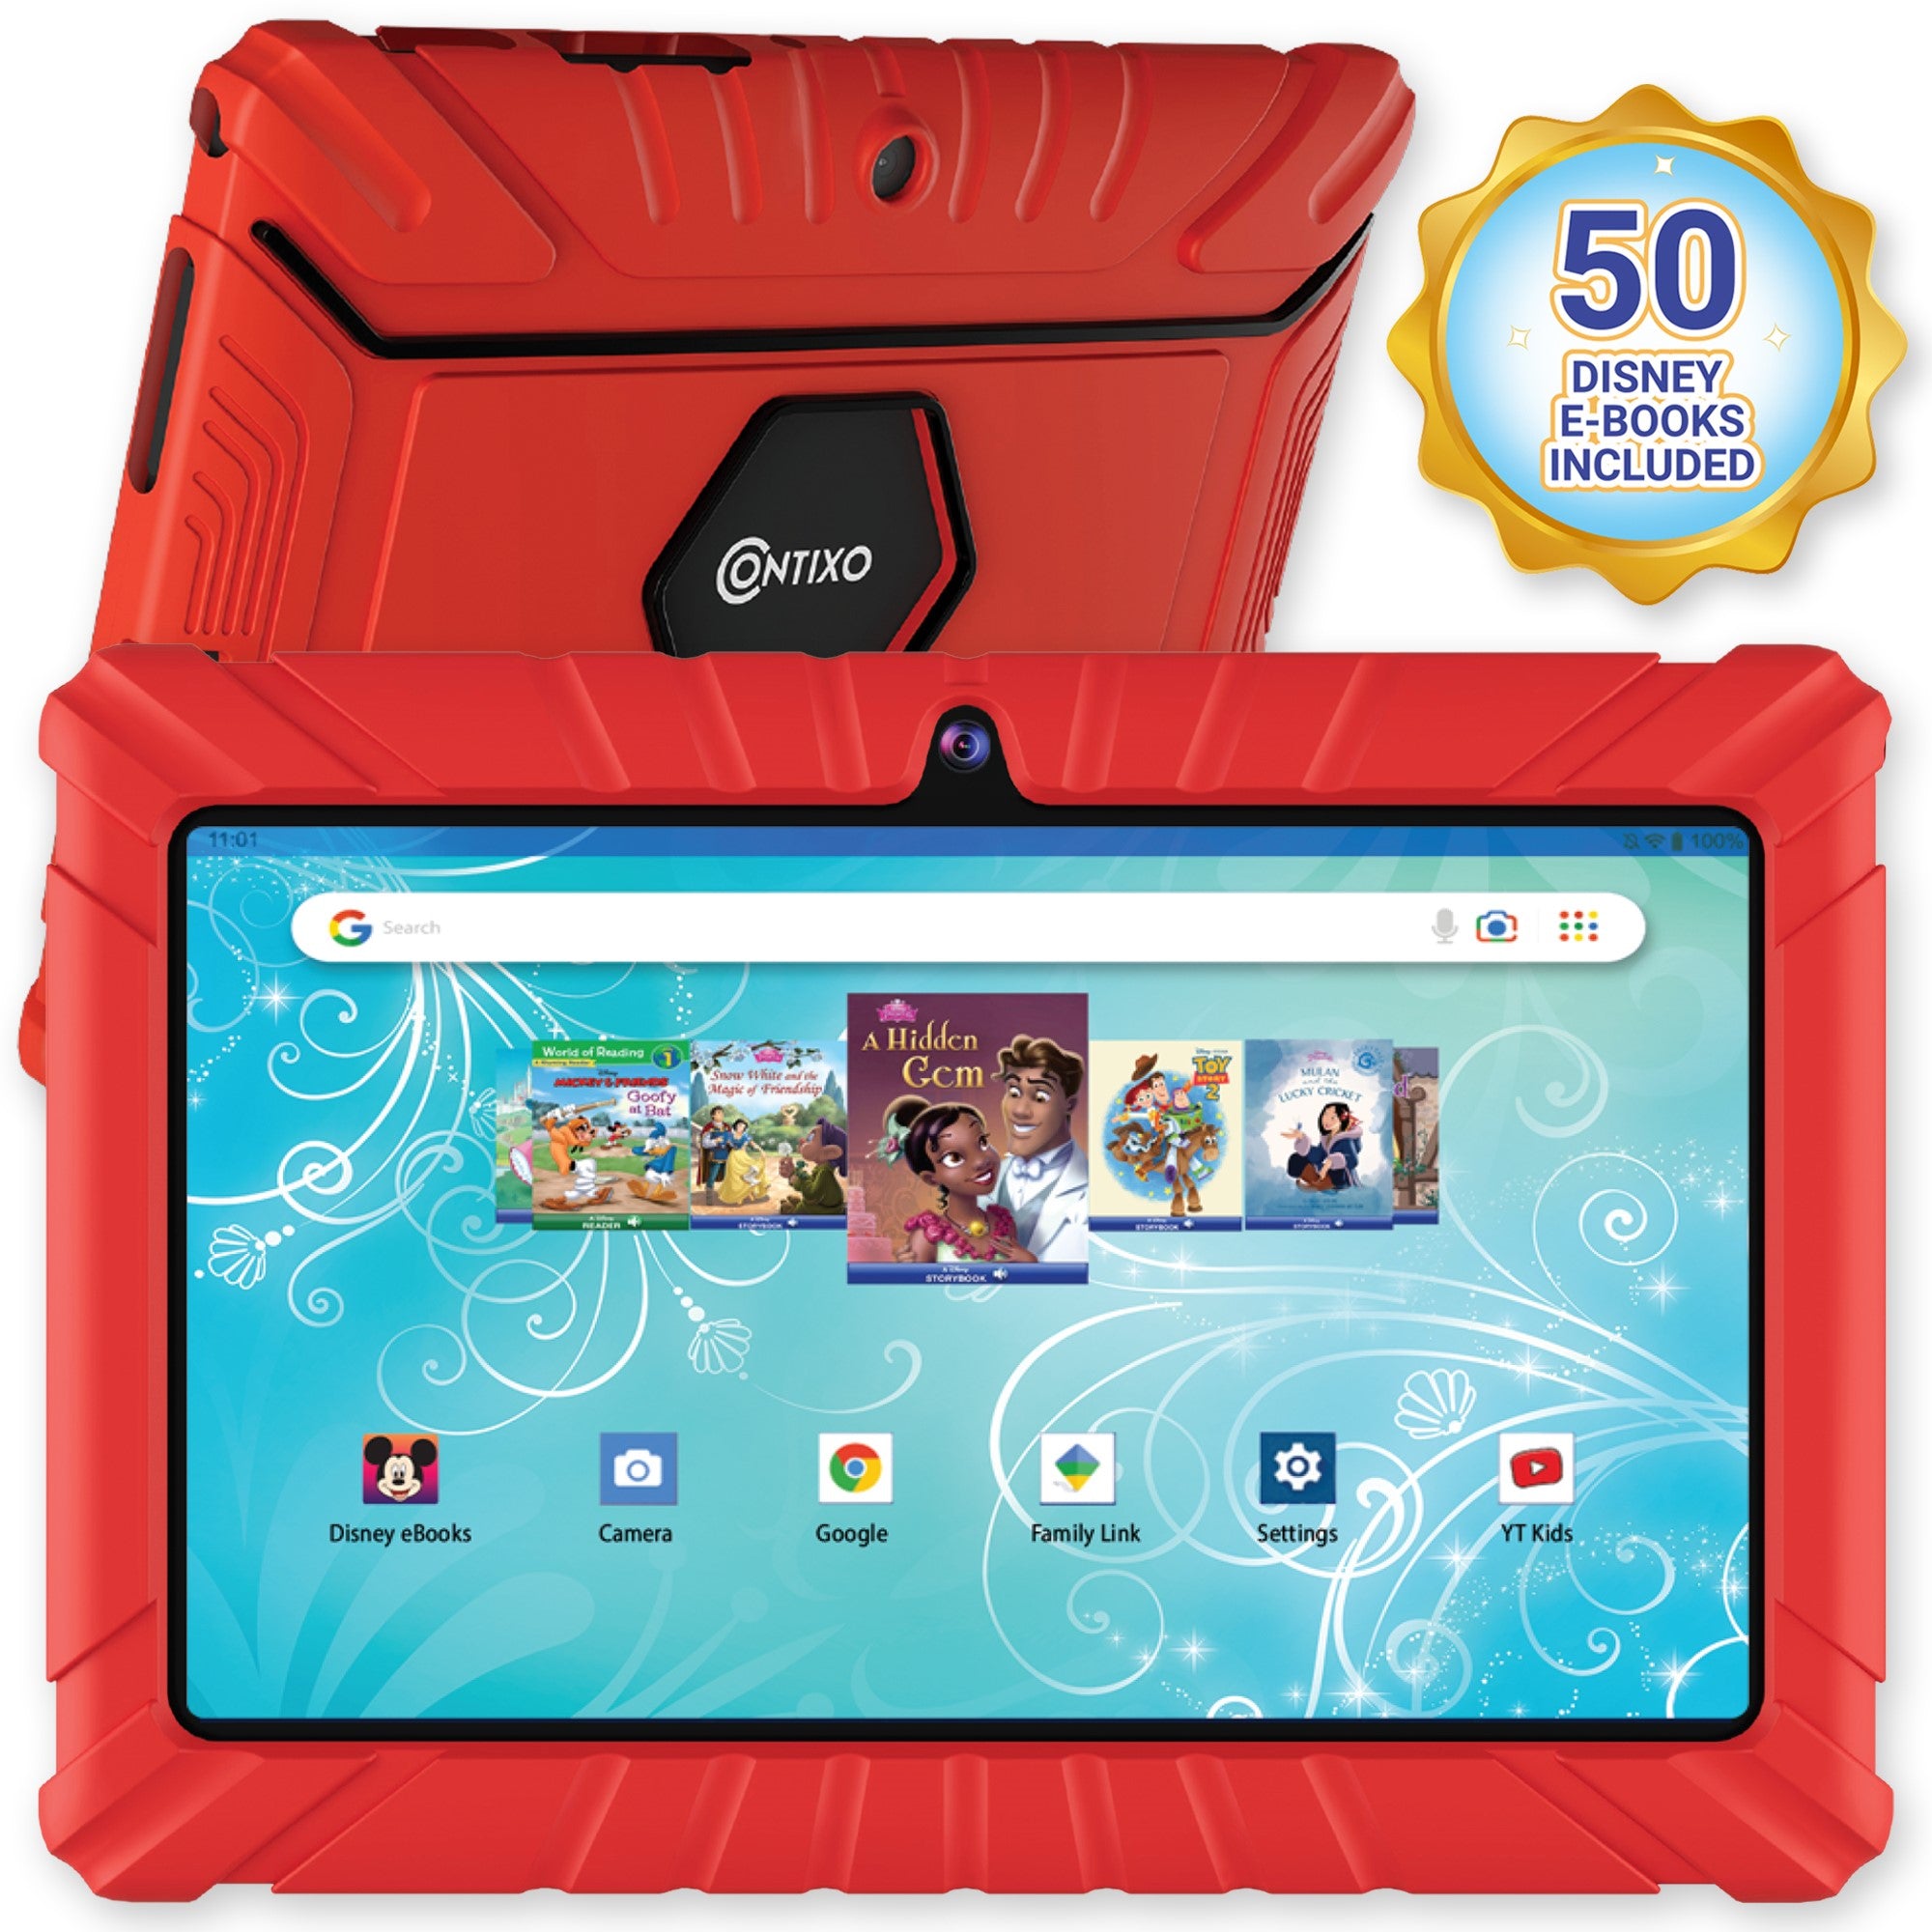 Contixo V8-2 Kids 7” Tablet - 50 Disney eBooks Included